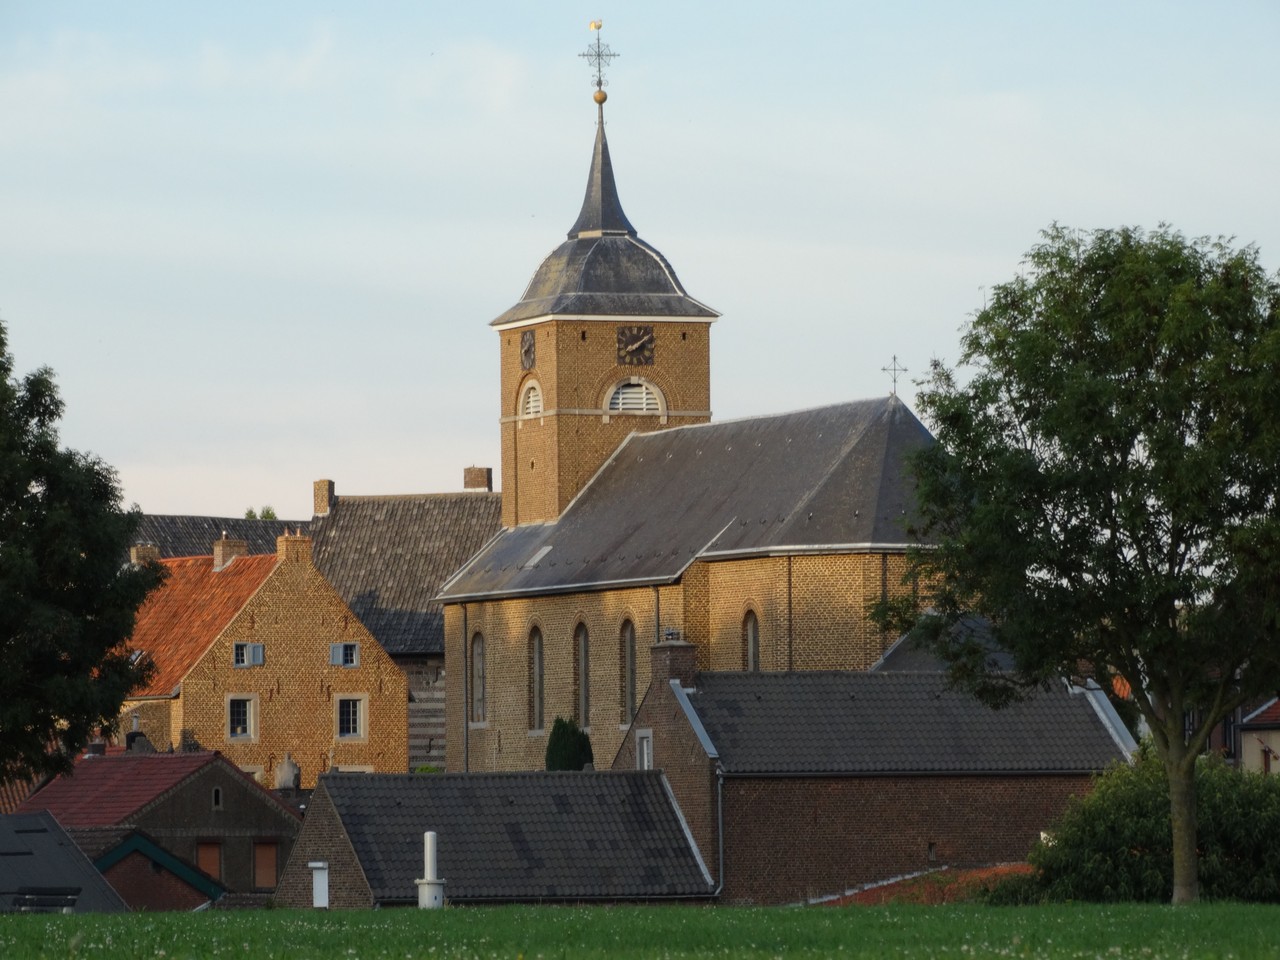 Terpkerk Urmond (Terpkirche)